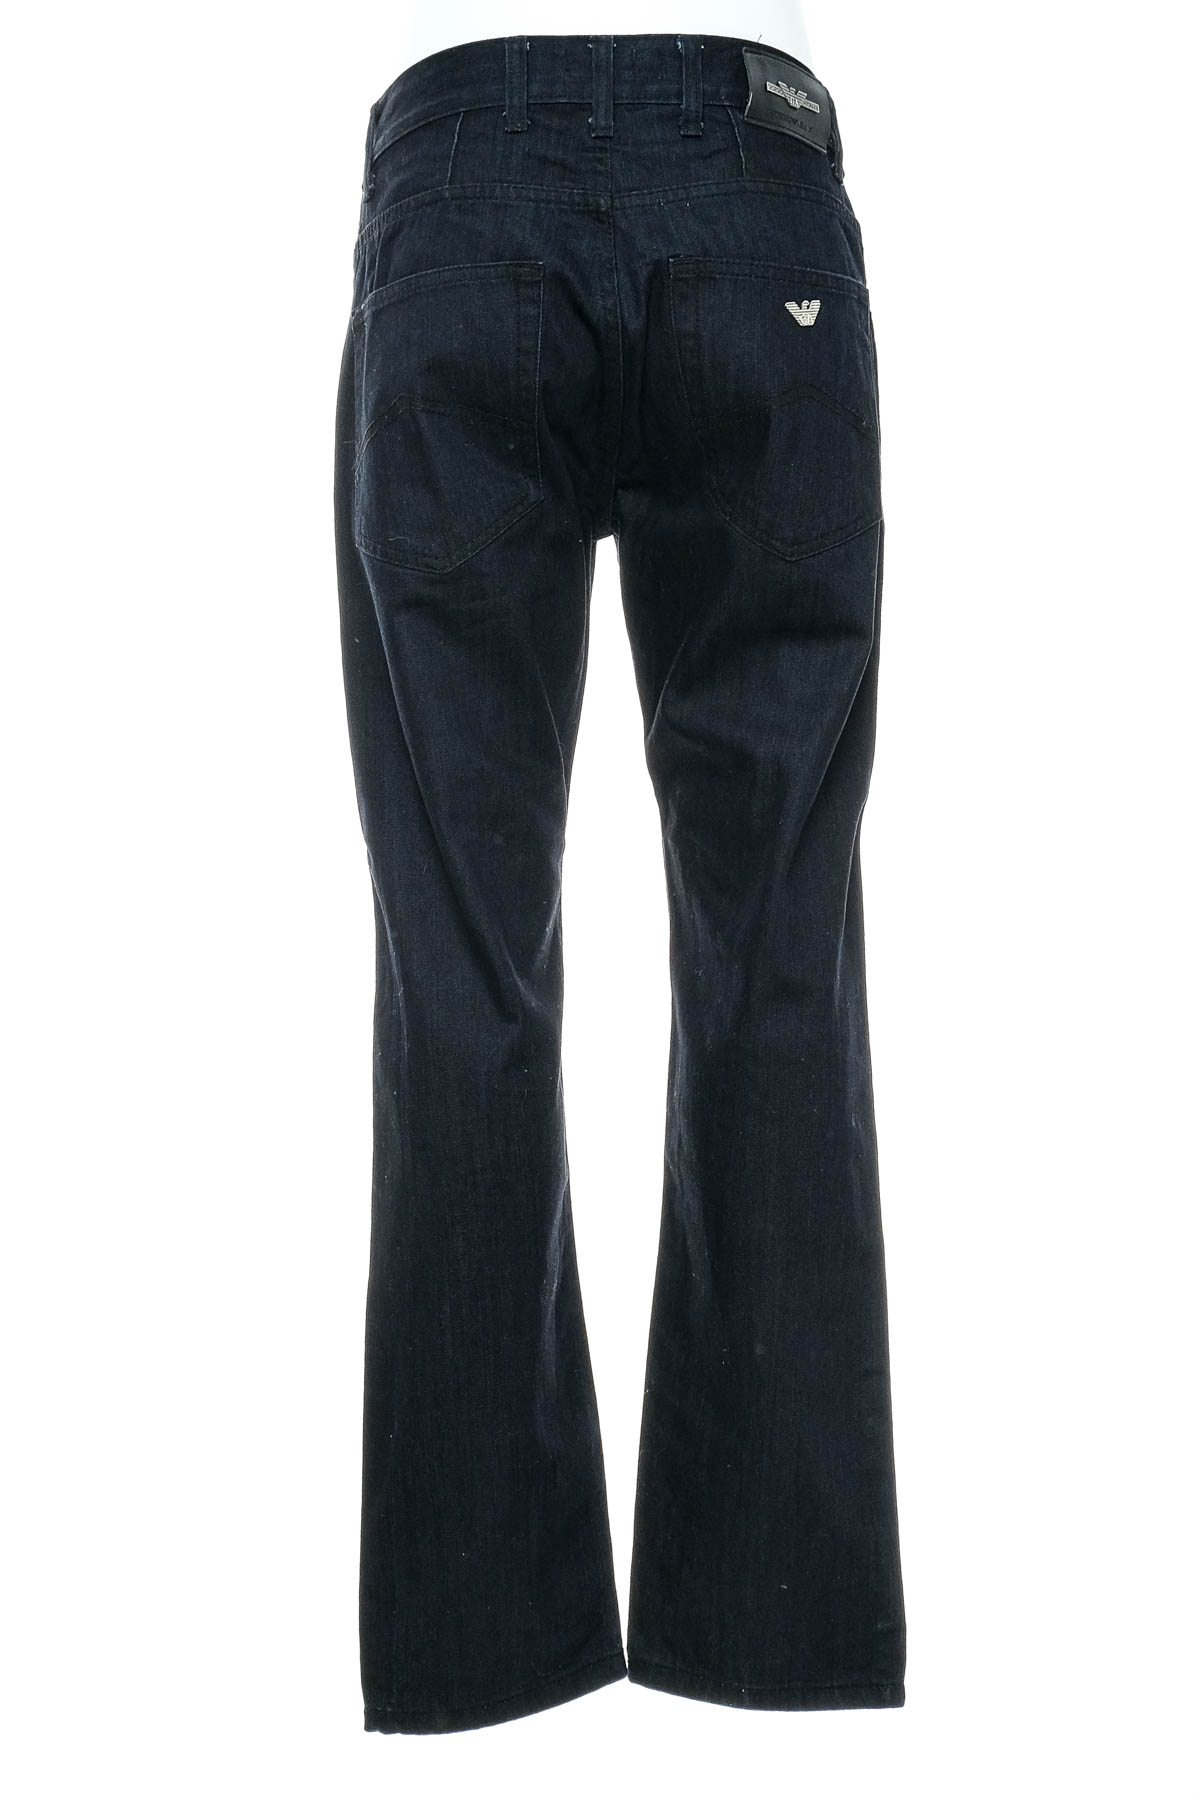 Męskie dżinsy - Armani Jeans - 1